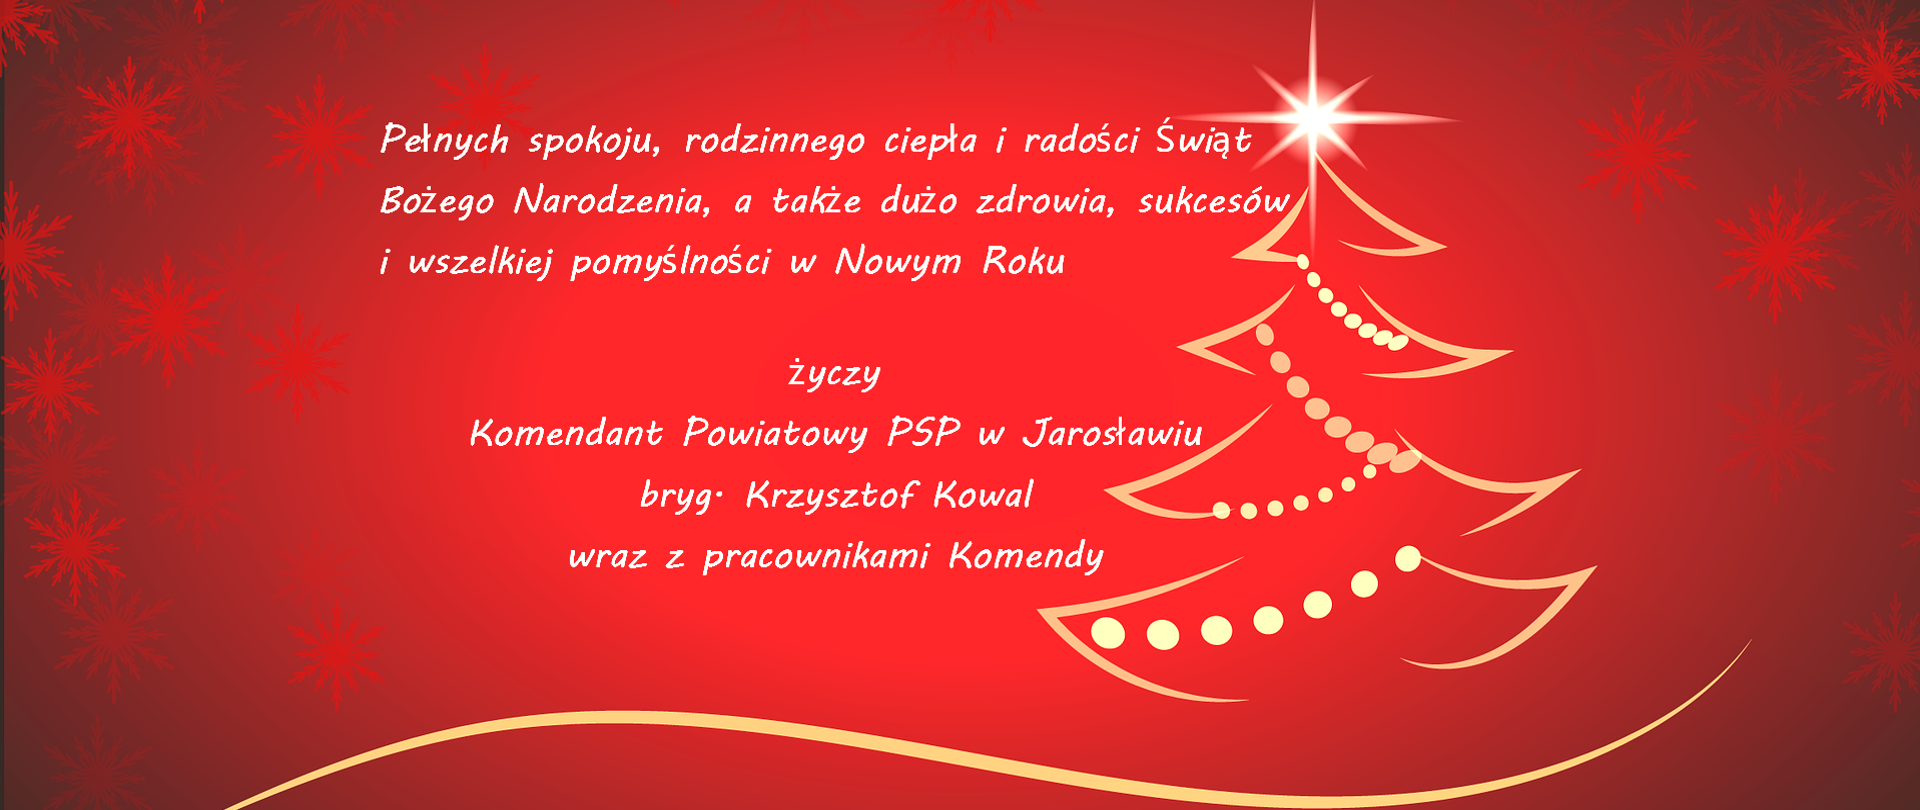 Na grafice widoczne są życzenia o treści: "Pełnych spokoju, rodzinnego ciepła i radości Świąt Bożego Narodzenia, a także dużo zdrowia, sukcesów i wszelkiej pomyślności w Nowym Roku życzy Komendant Powiatowy PSP w Jarosławiu bryg. Krzysztof Kowal wraz z pracownikami Komendy". Po prawej widać kontury w kształcie choinki bożonarodzeniowej.